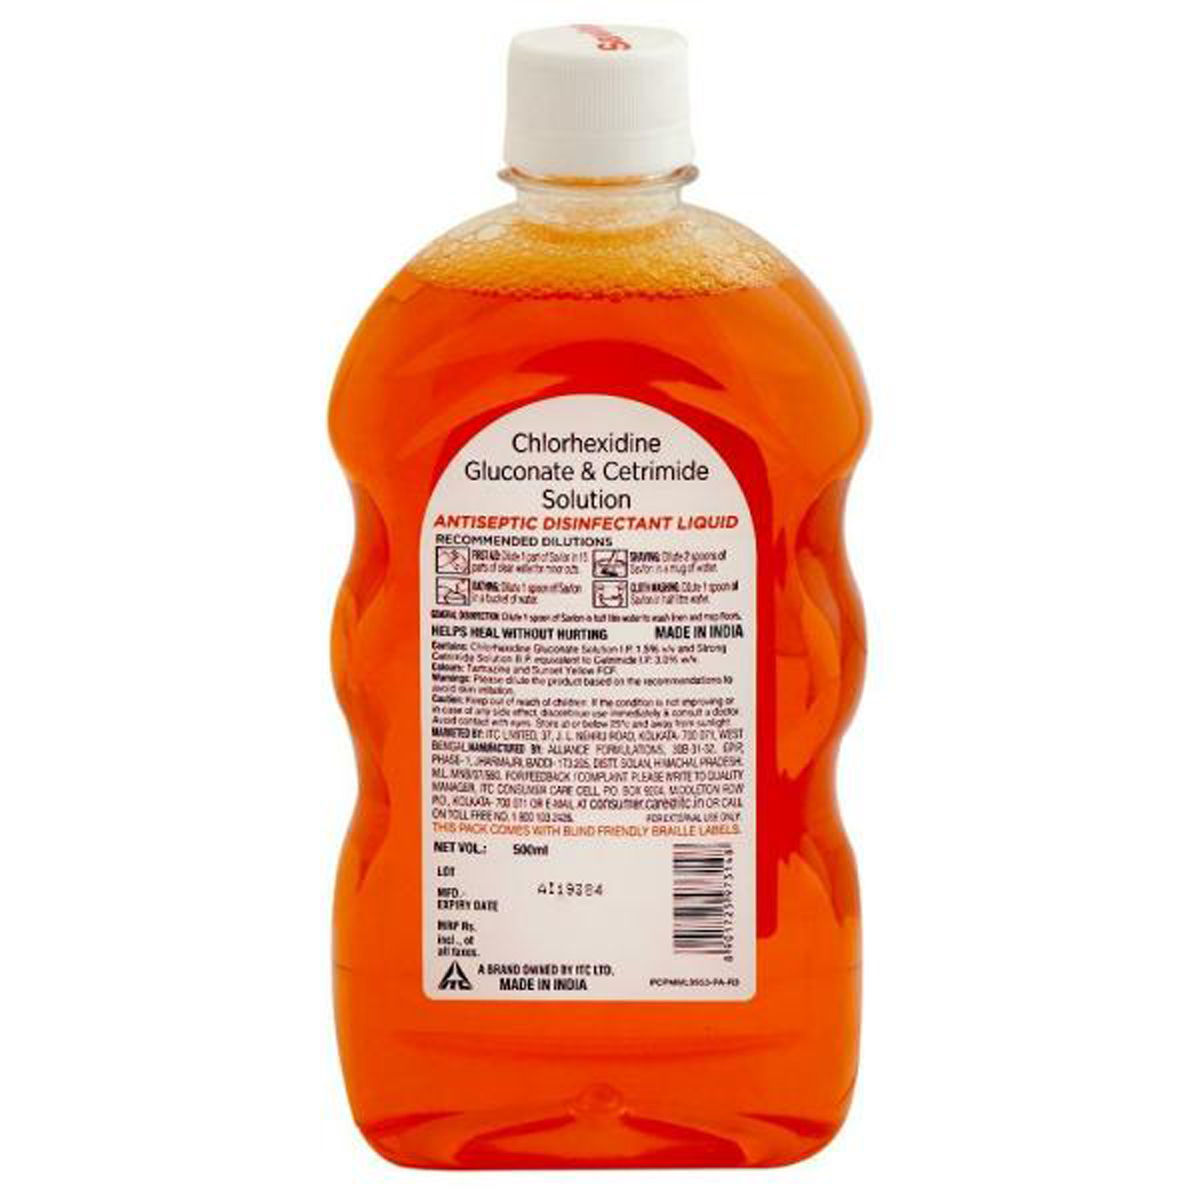 Savlon Antiseptic Disinfectant Liquid, 500 ml, Pack of 1 